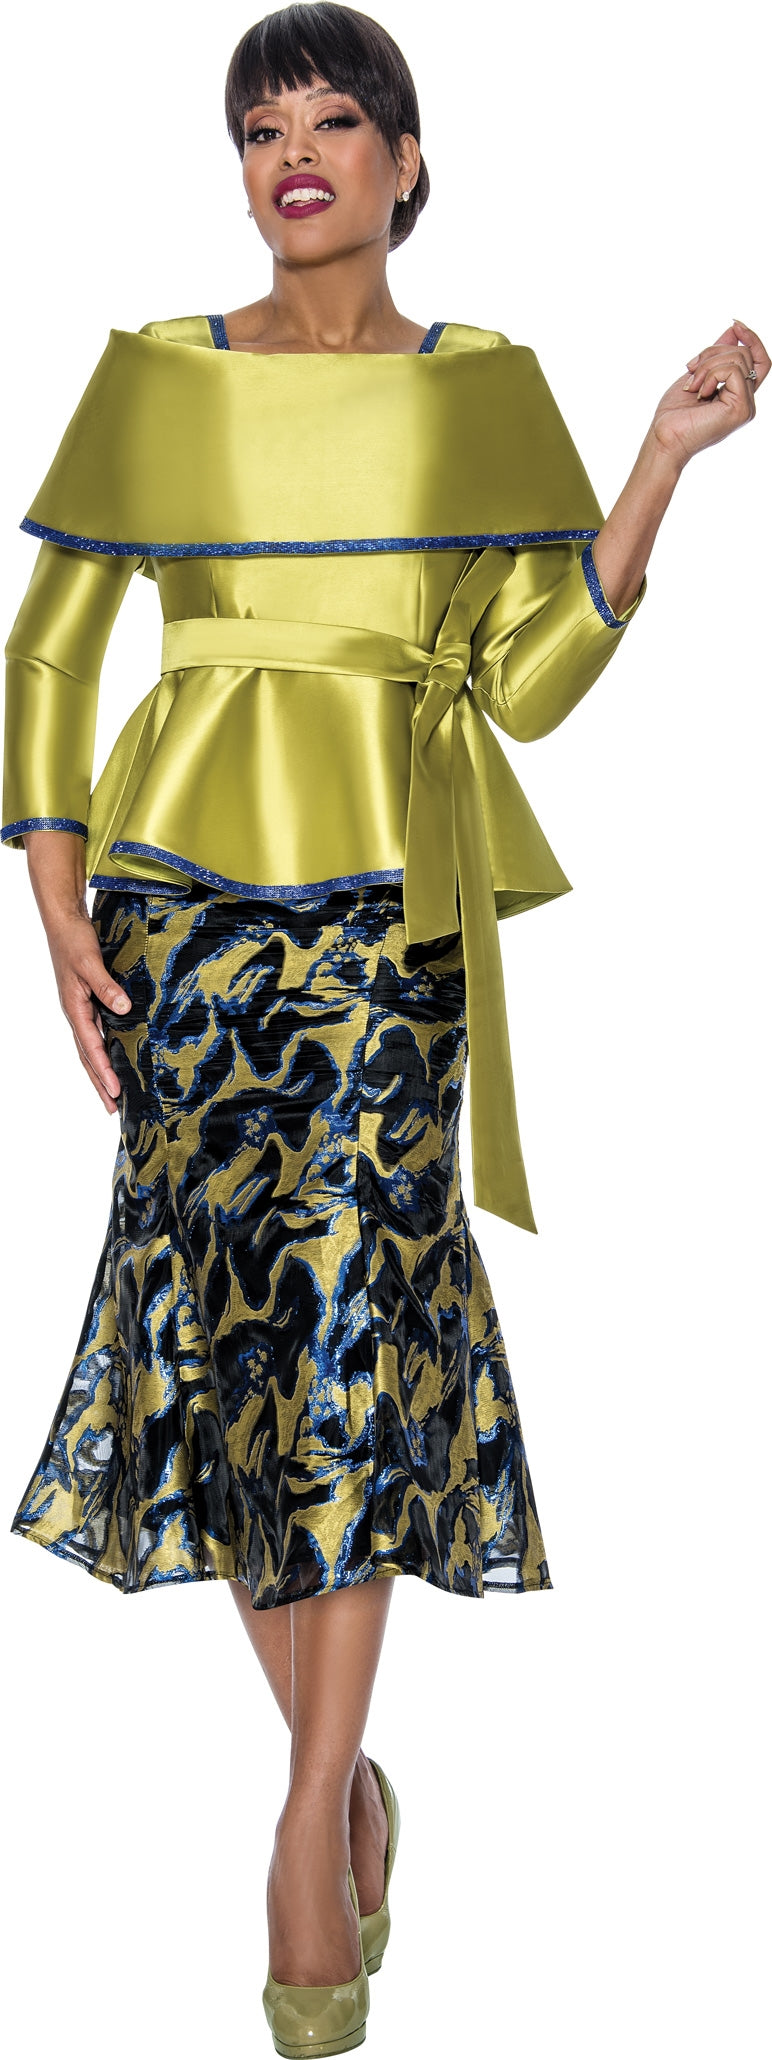 Divine Queen Portrait Collar Print 2pc Skirt Suit Walk With Me Boutique